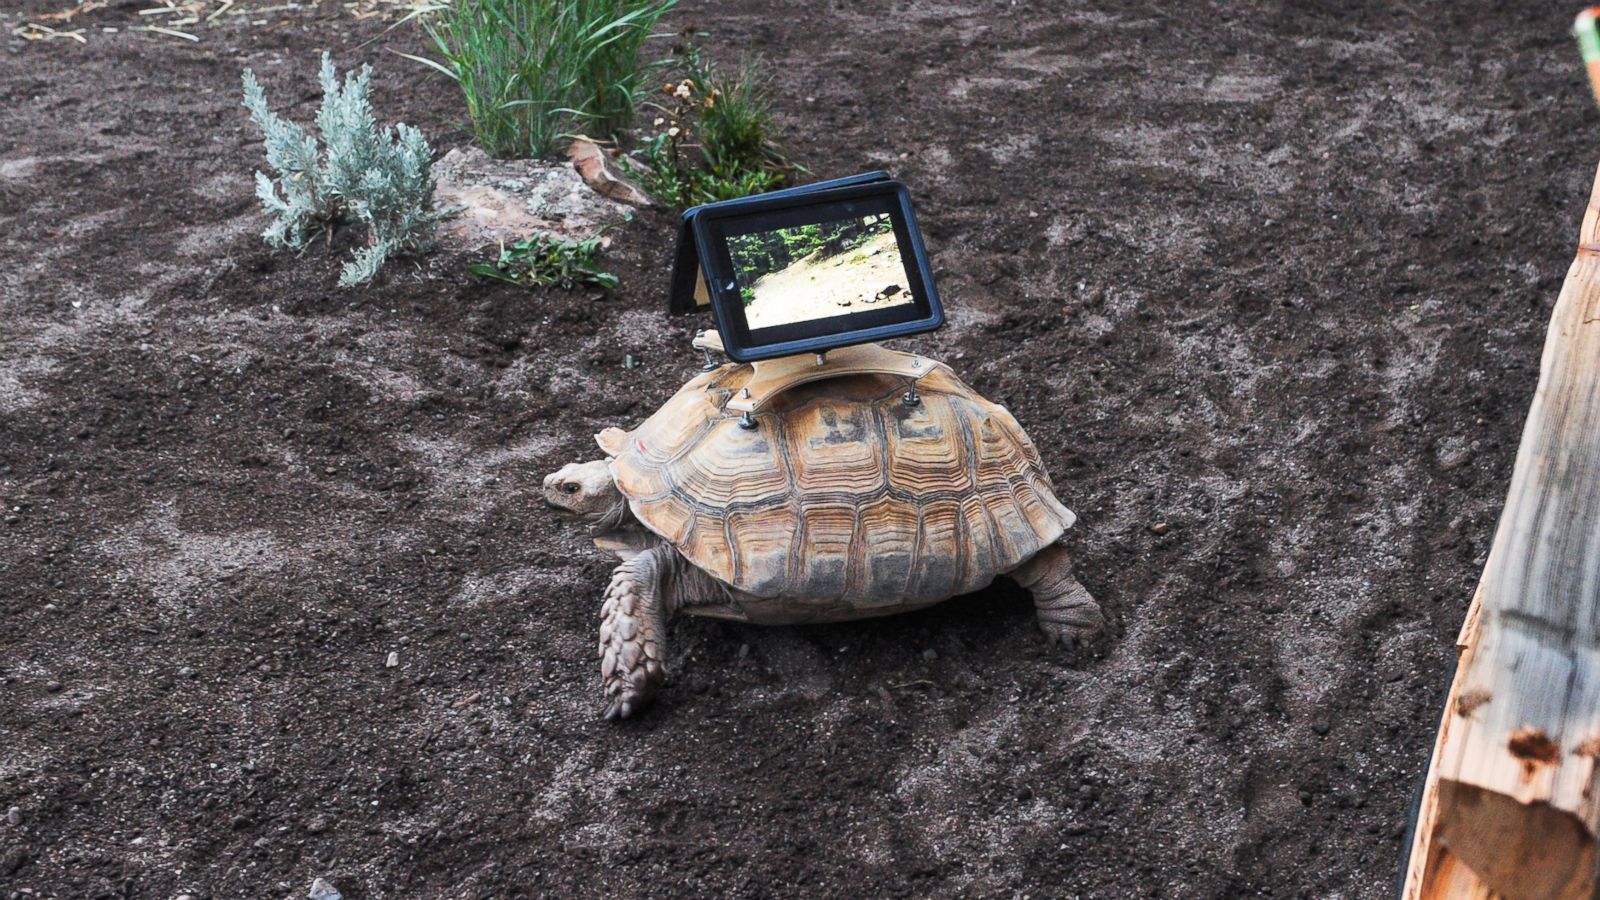 Tortoise Art Installation Under Fire; Conservationist Defends Exhibit - ABC  News